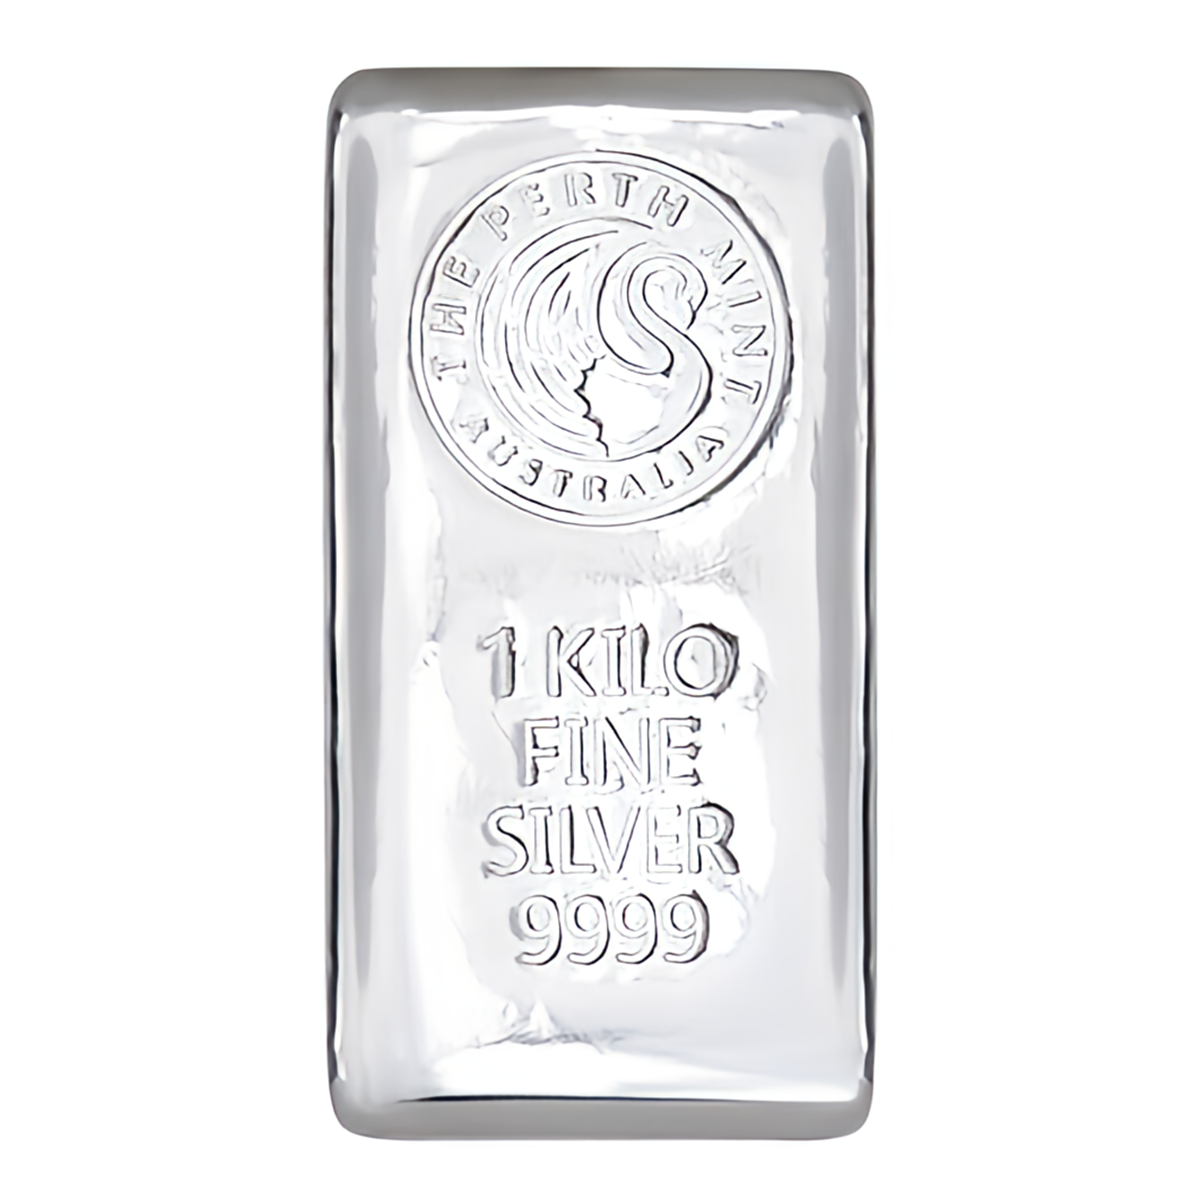 澳洲珀斯鑄幣廠99.99%模鑄銀條1公斤 (26.7172兩)